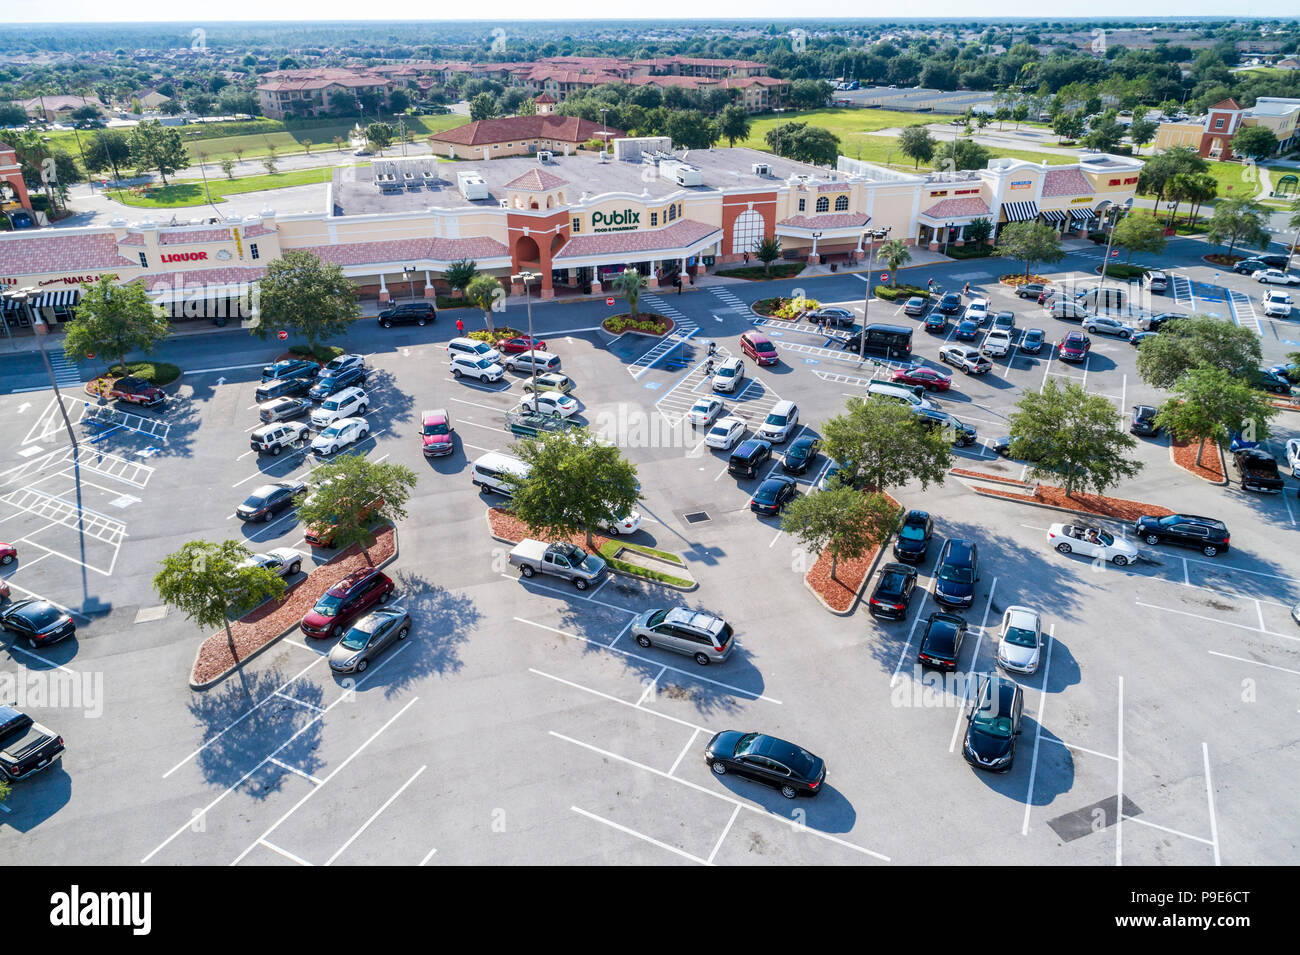 Orlando Florida, Davenport, Publix Food Supermarkt, Parkplatz im Einkaufszentrum, Luftaufnahme von oben, FL18071147d Stockfoto